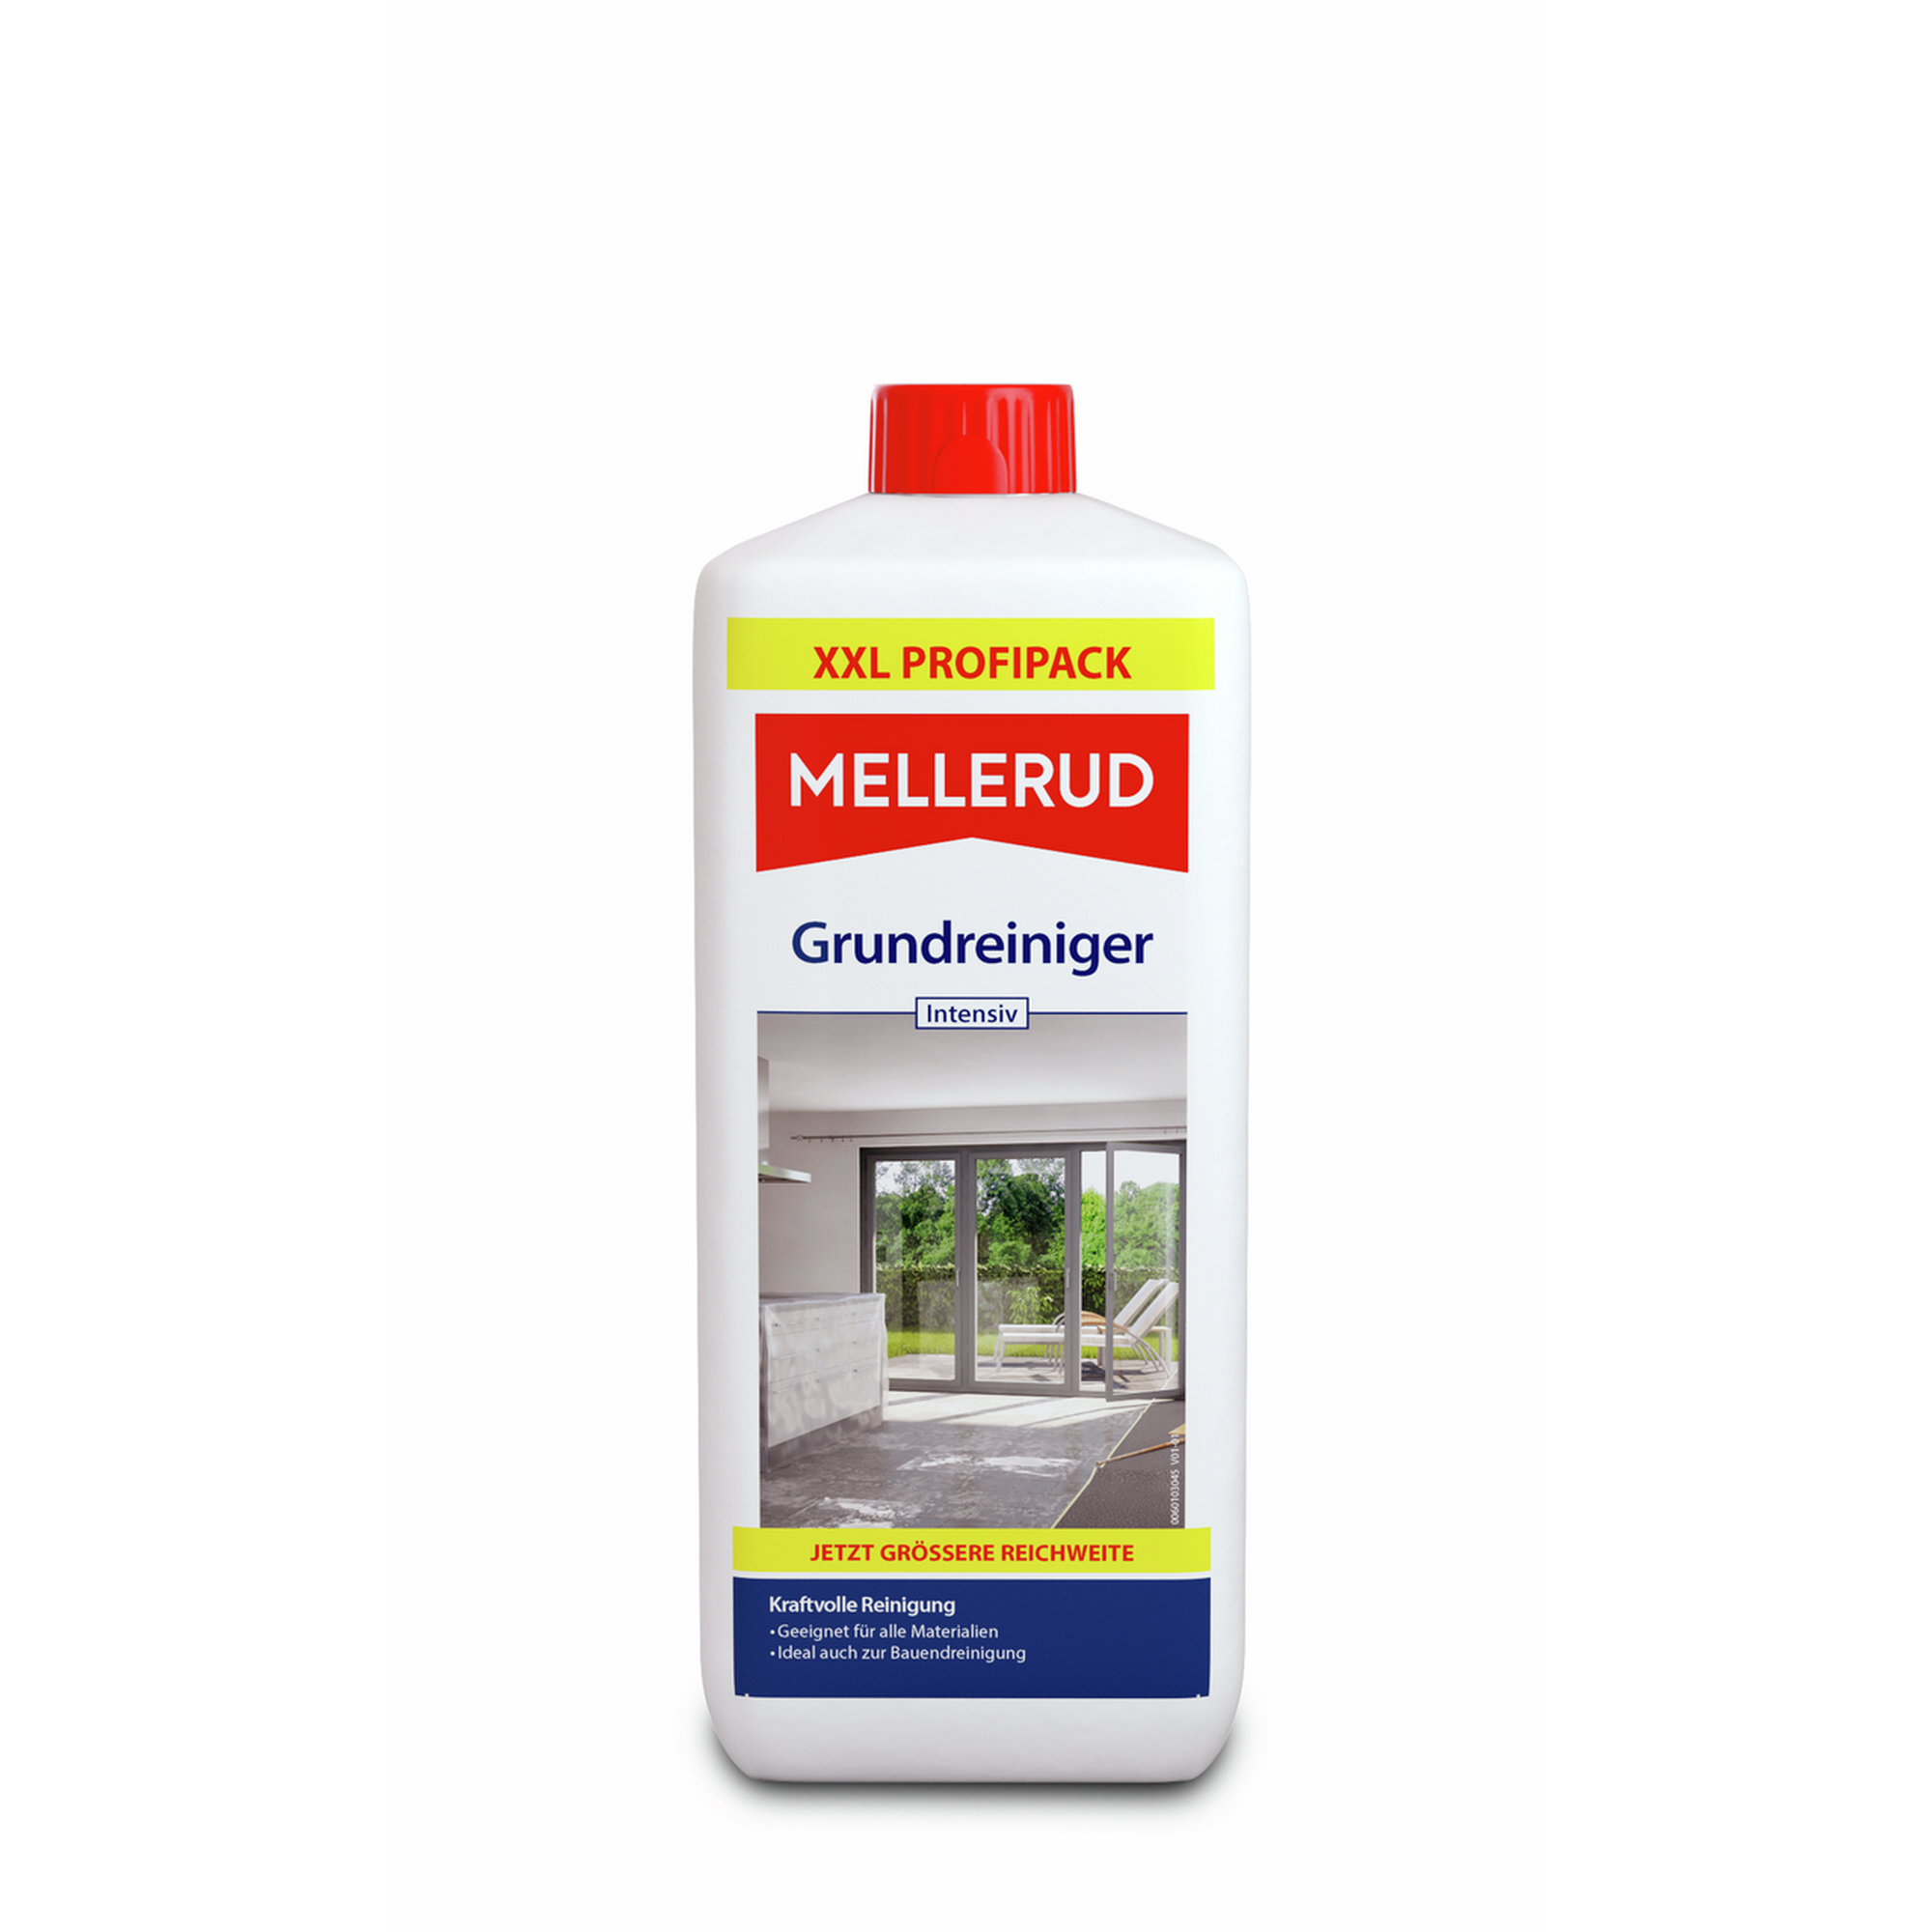 Grundreiniger 'Intensiv' 1,75 Liter + product picture